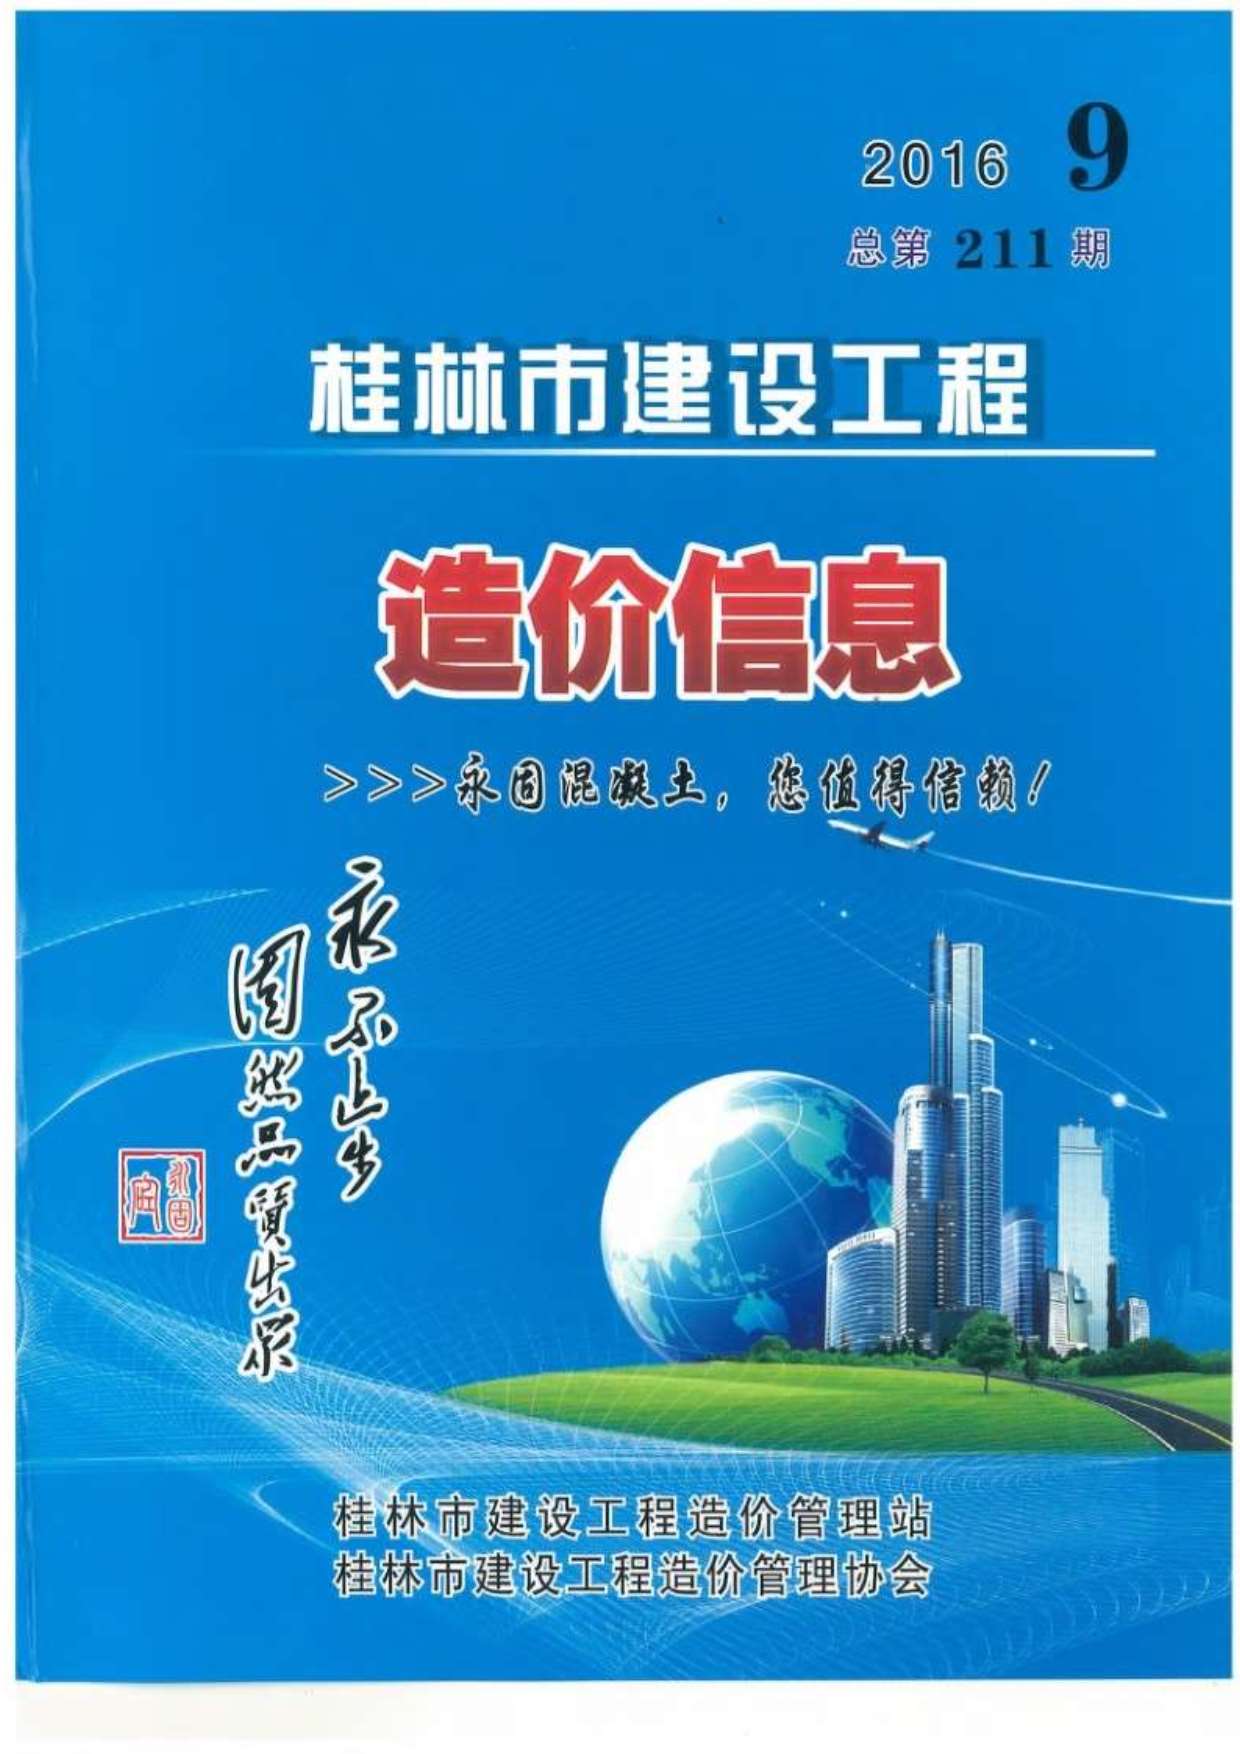 桂林市2016年9月建设工程造价信息